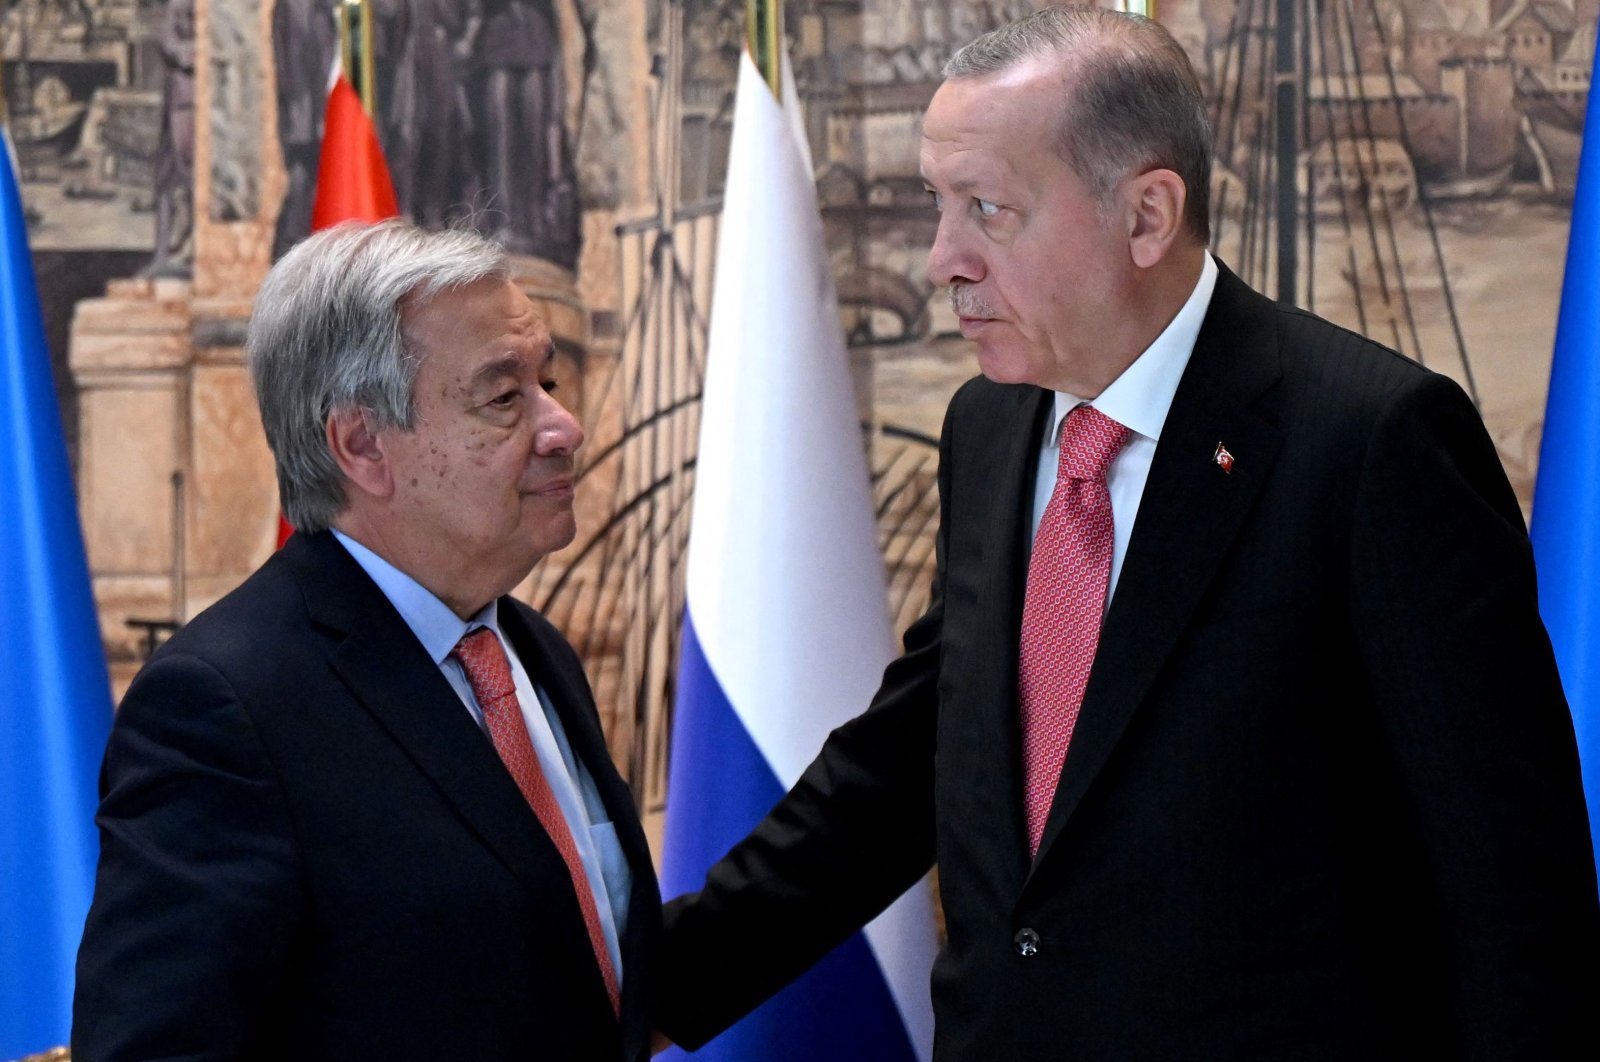 Malezyalı politikacı Türkiye liderliğindeki anlaşmayı ‘büyük diplomatik darbe’ olarak selamladı